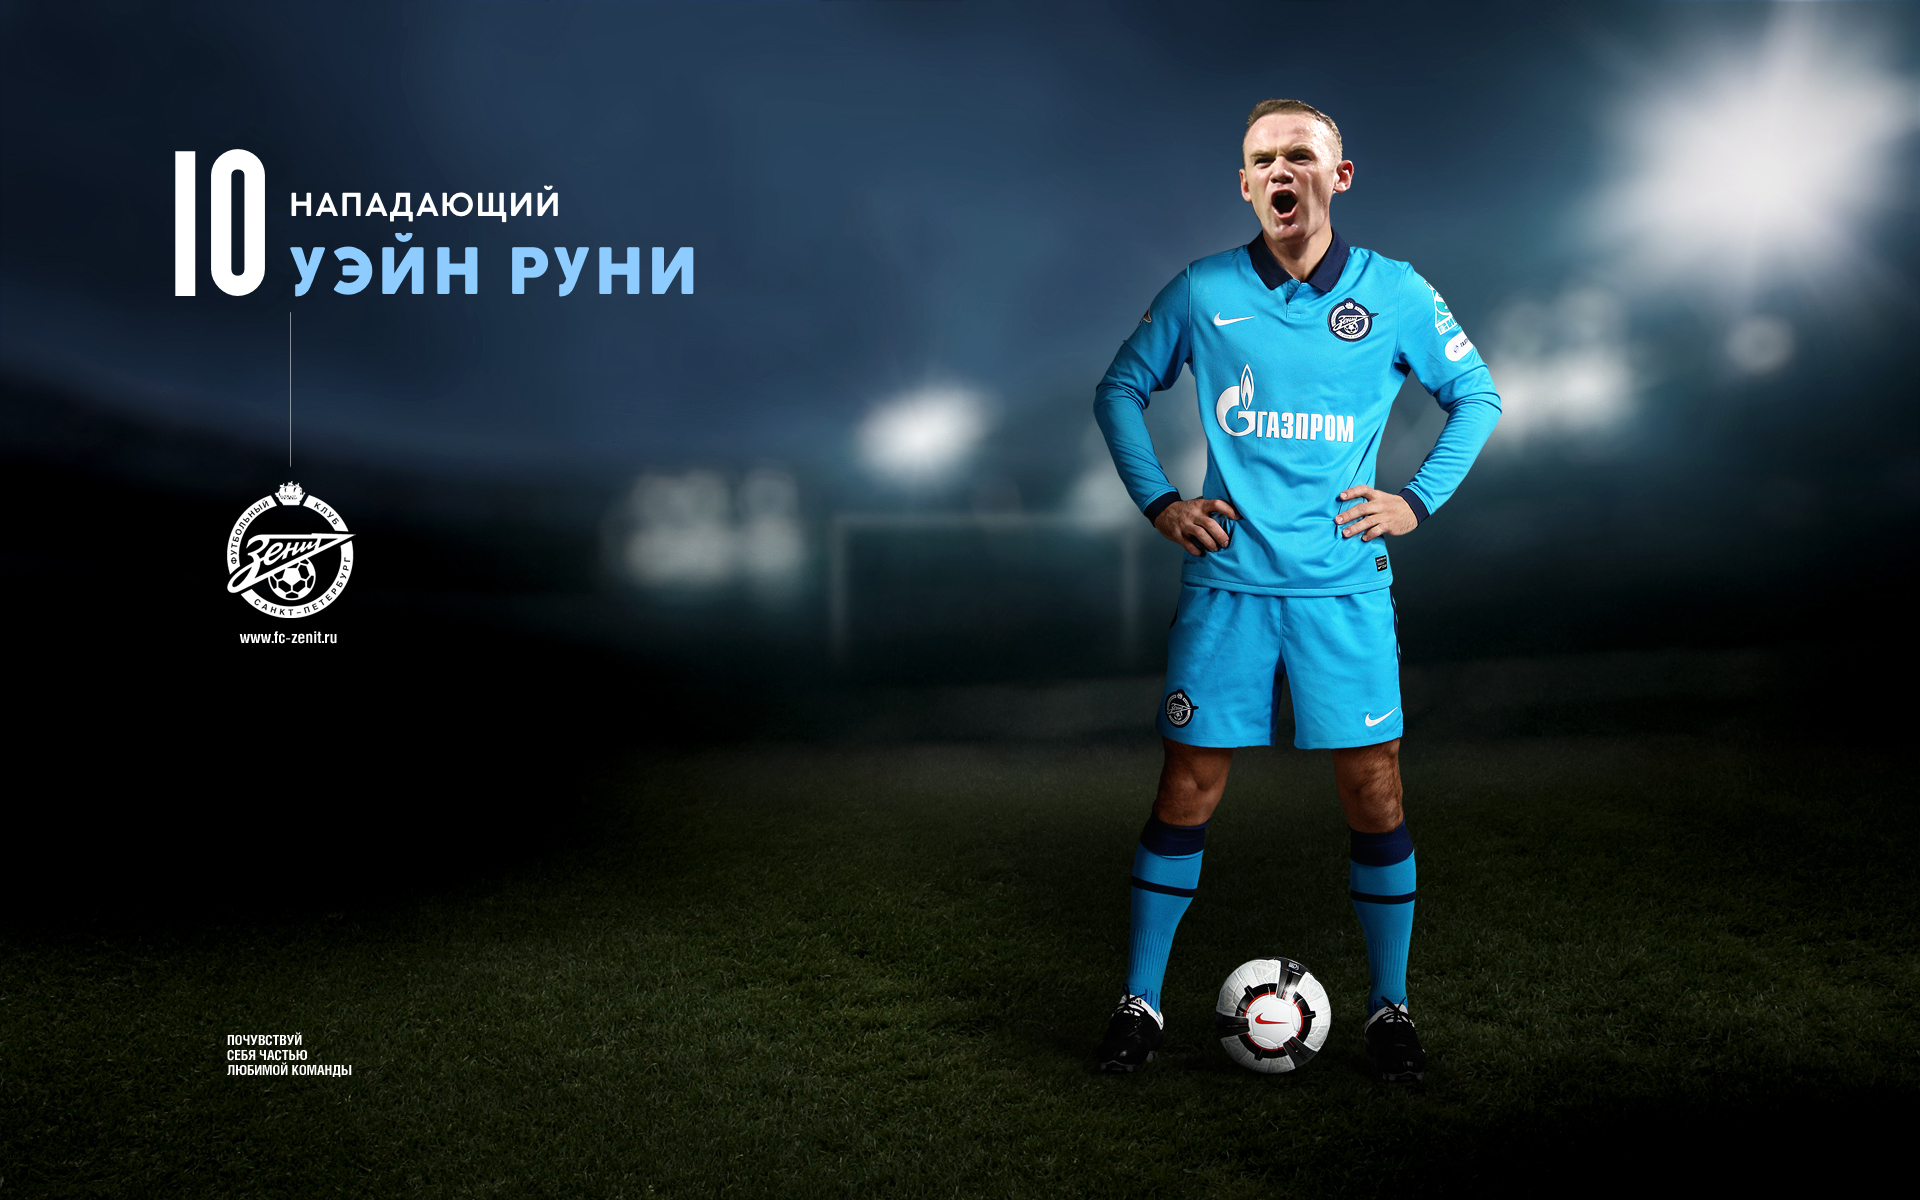 Вејн Руни потписује уговор вредан 50 милиона евра са „Зенитом“ из Санкт Петербурга.